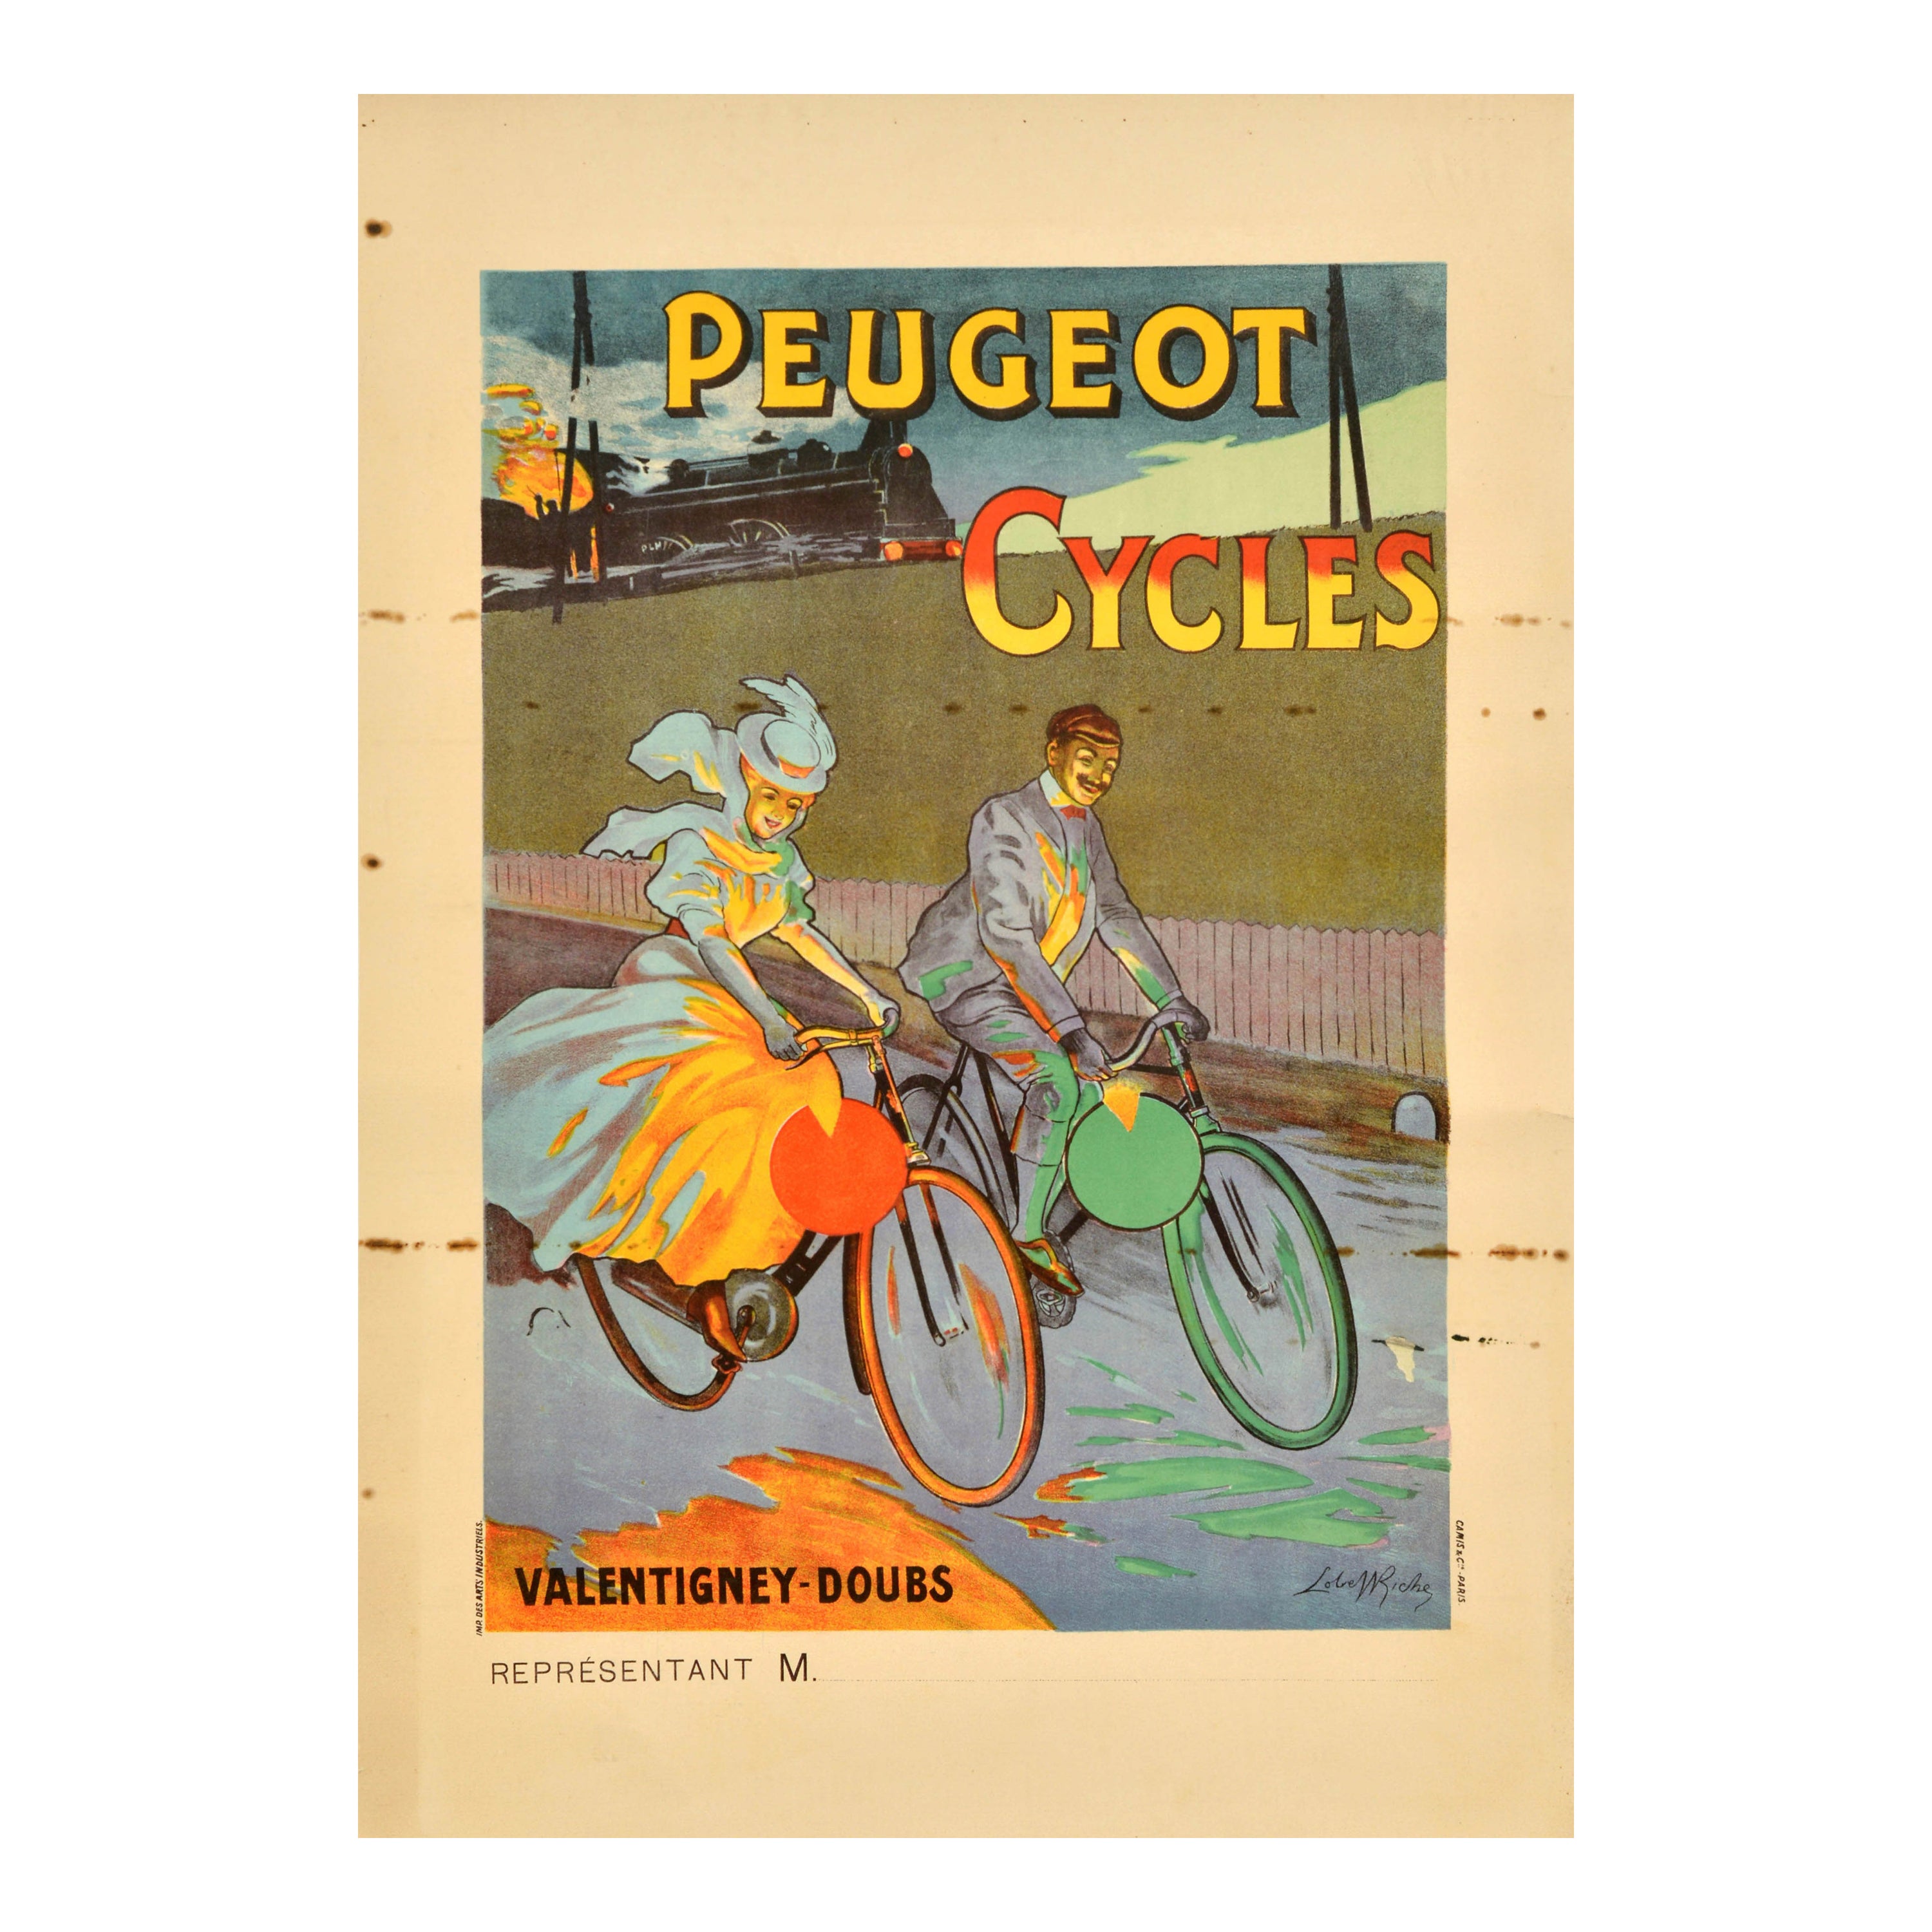 Original Antikes Werbeplakat Peugeot Cycles Valentigney Doubs, Werbeplakat für Fahrrad